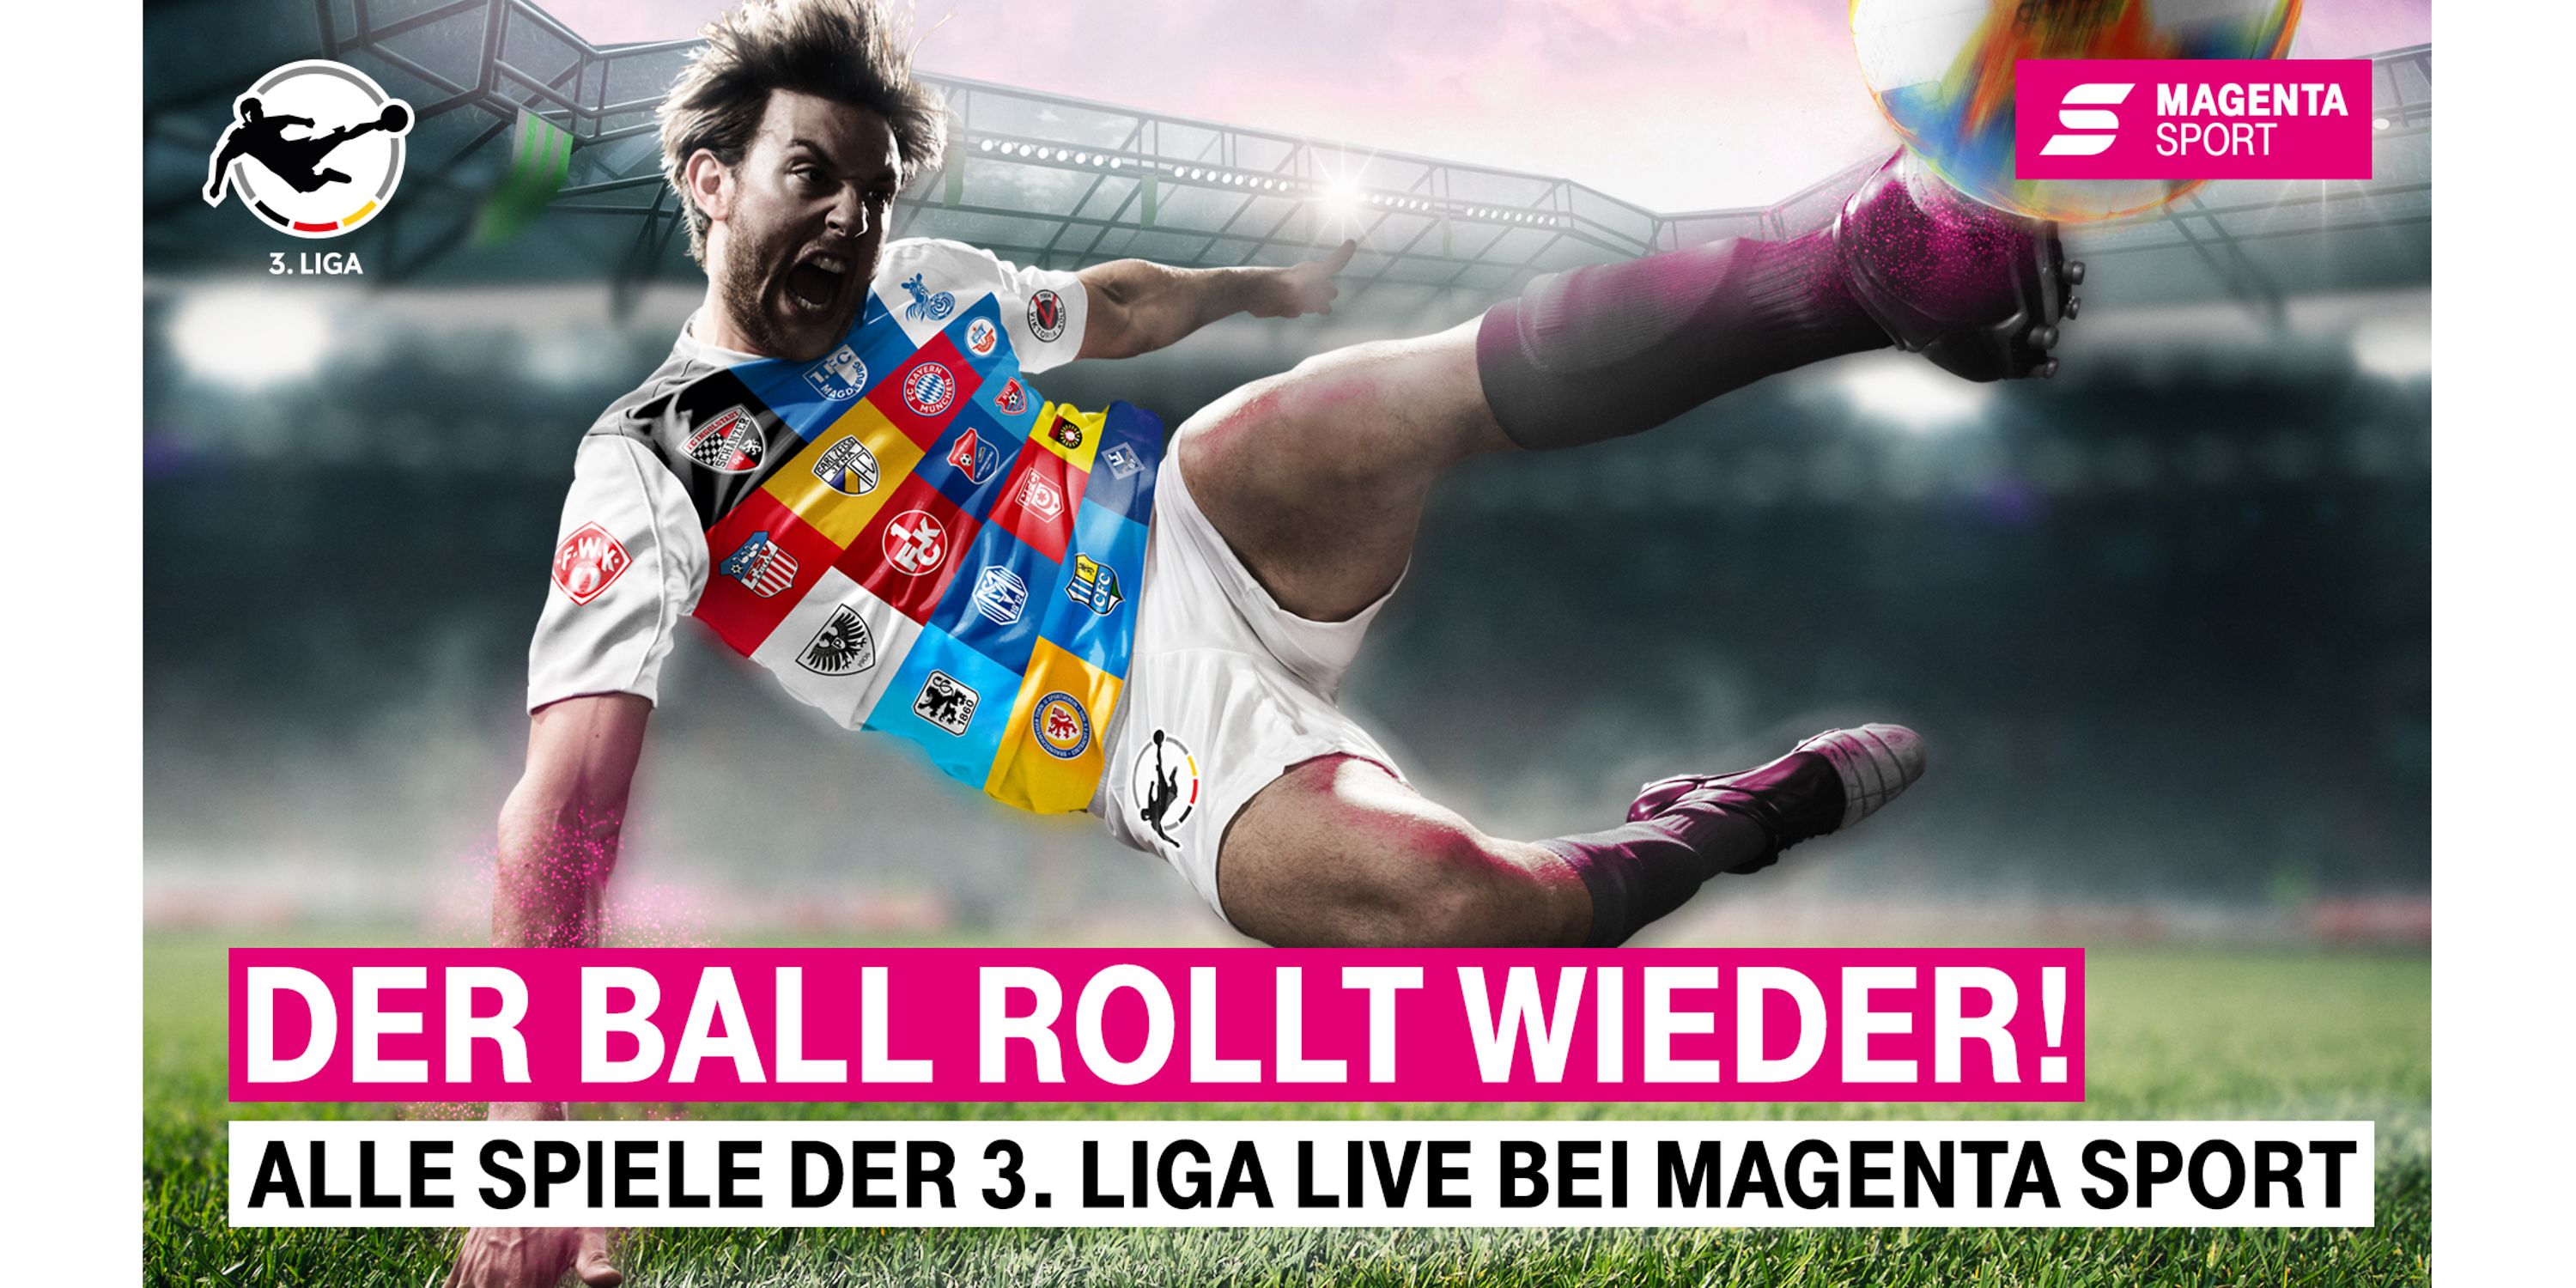 MagentaSport zeigt jetzt auch dritte Liga wieder live Deutsche Telekom